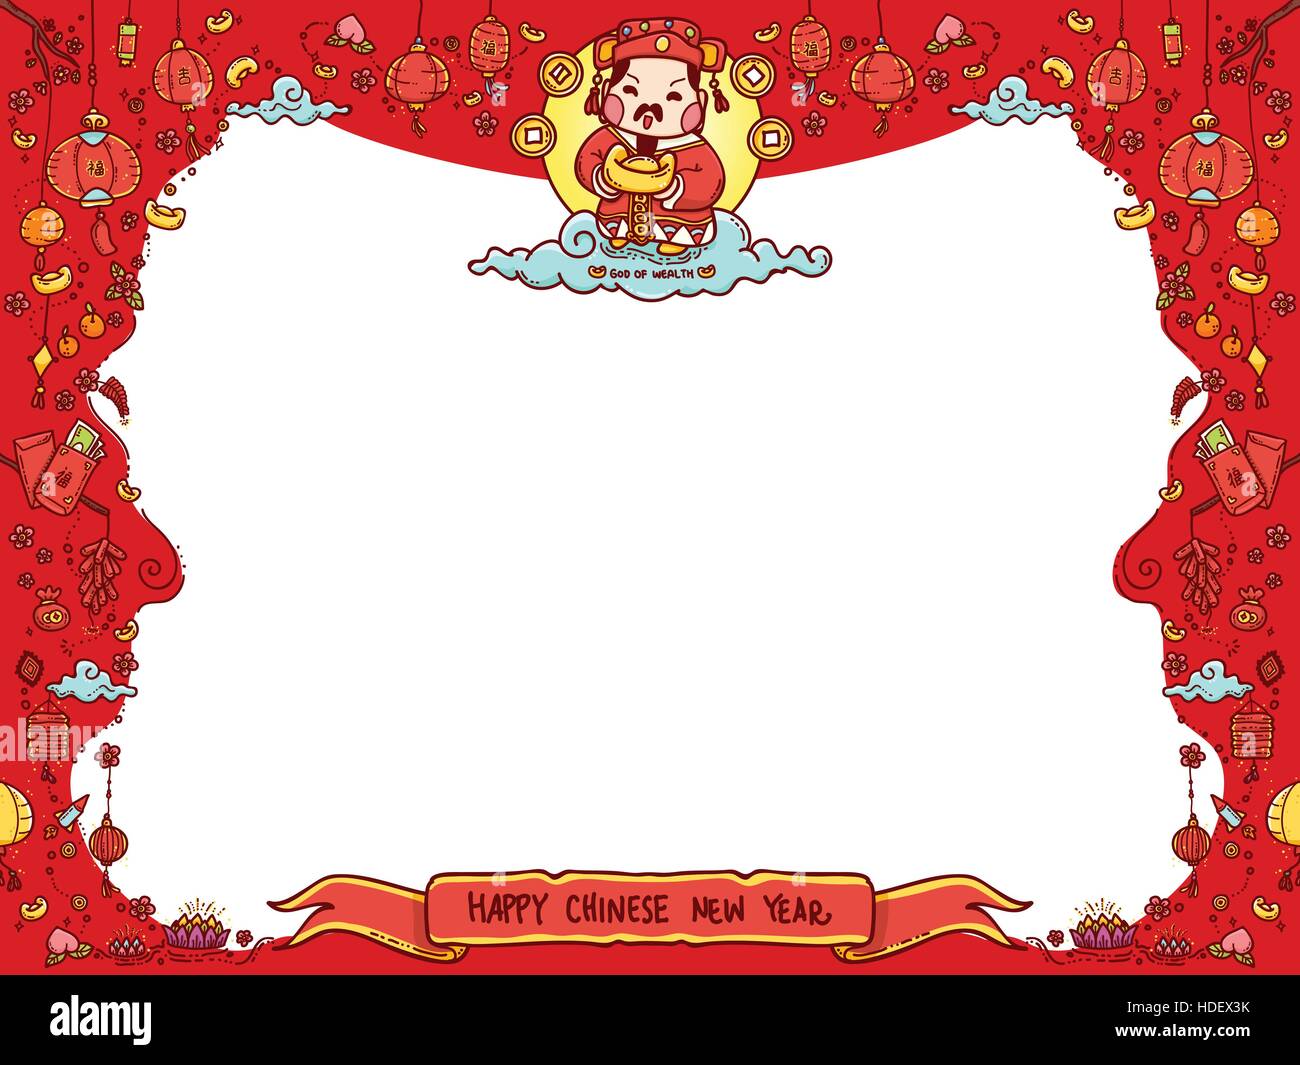 Vektor-Illustration der chinesischen Gott des Reichtums "Tsai Shen Yeh' für chinesisches Neujahr Grußkarte mit Exemplar. Stock Vektor